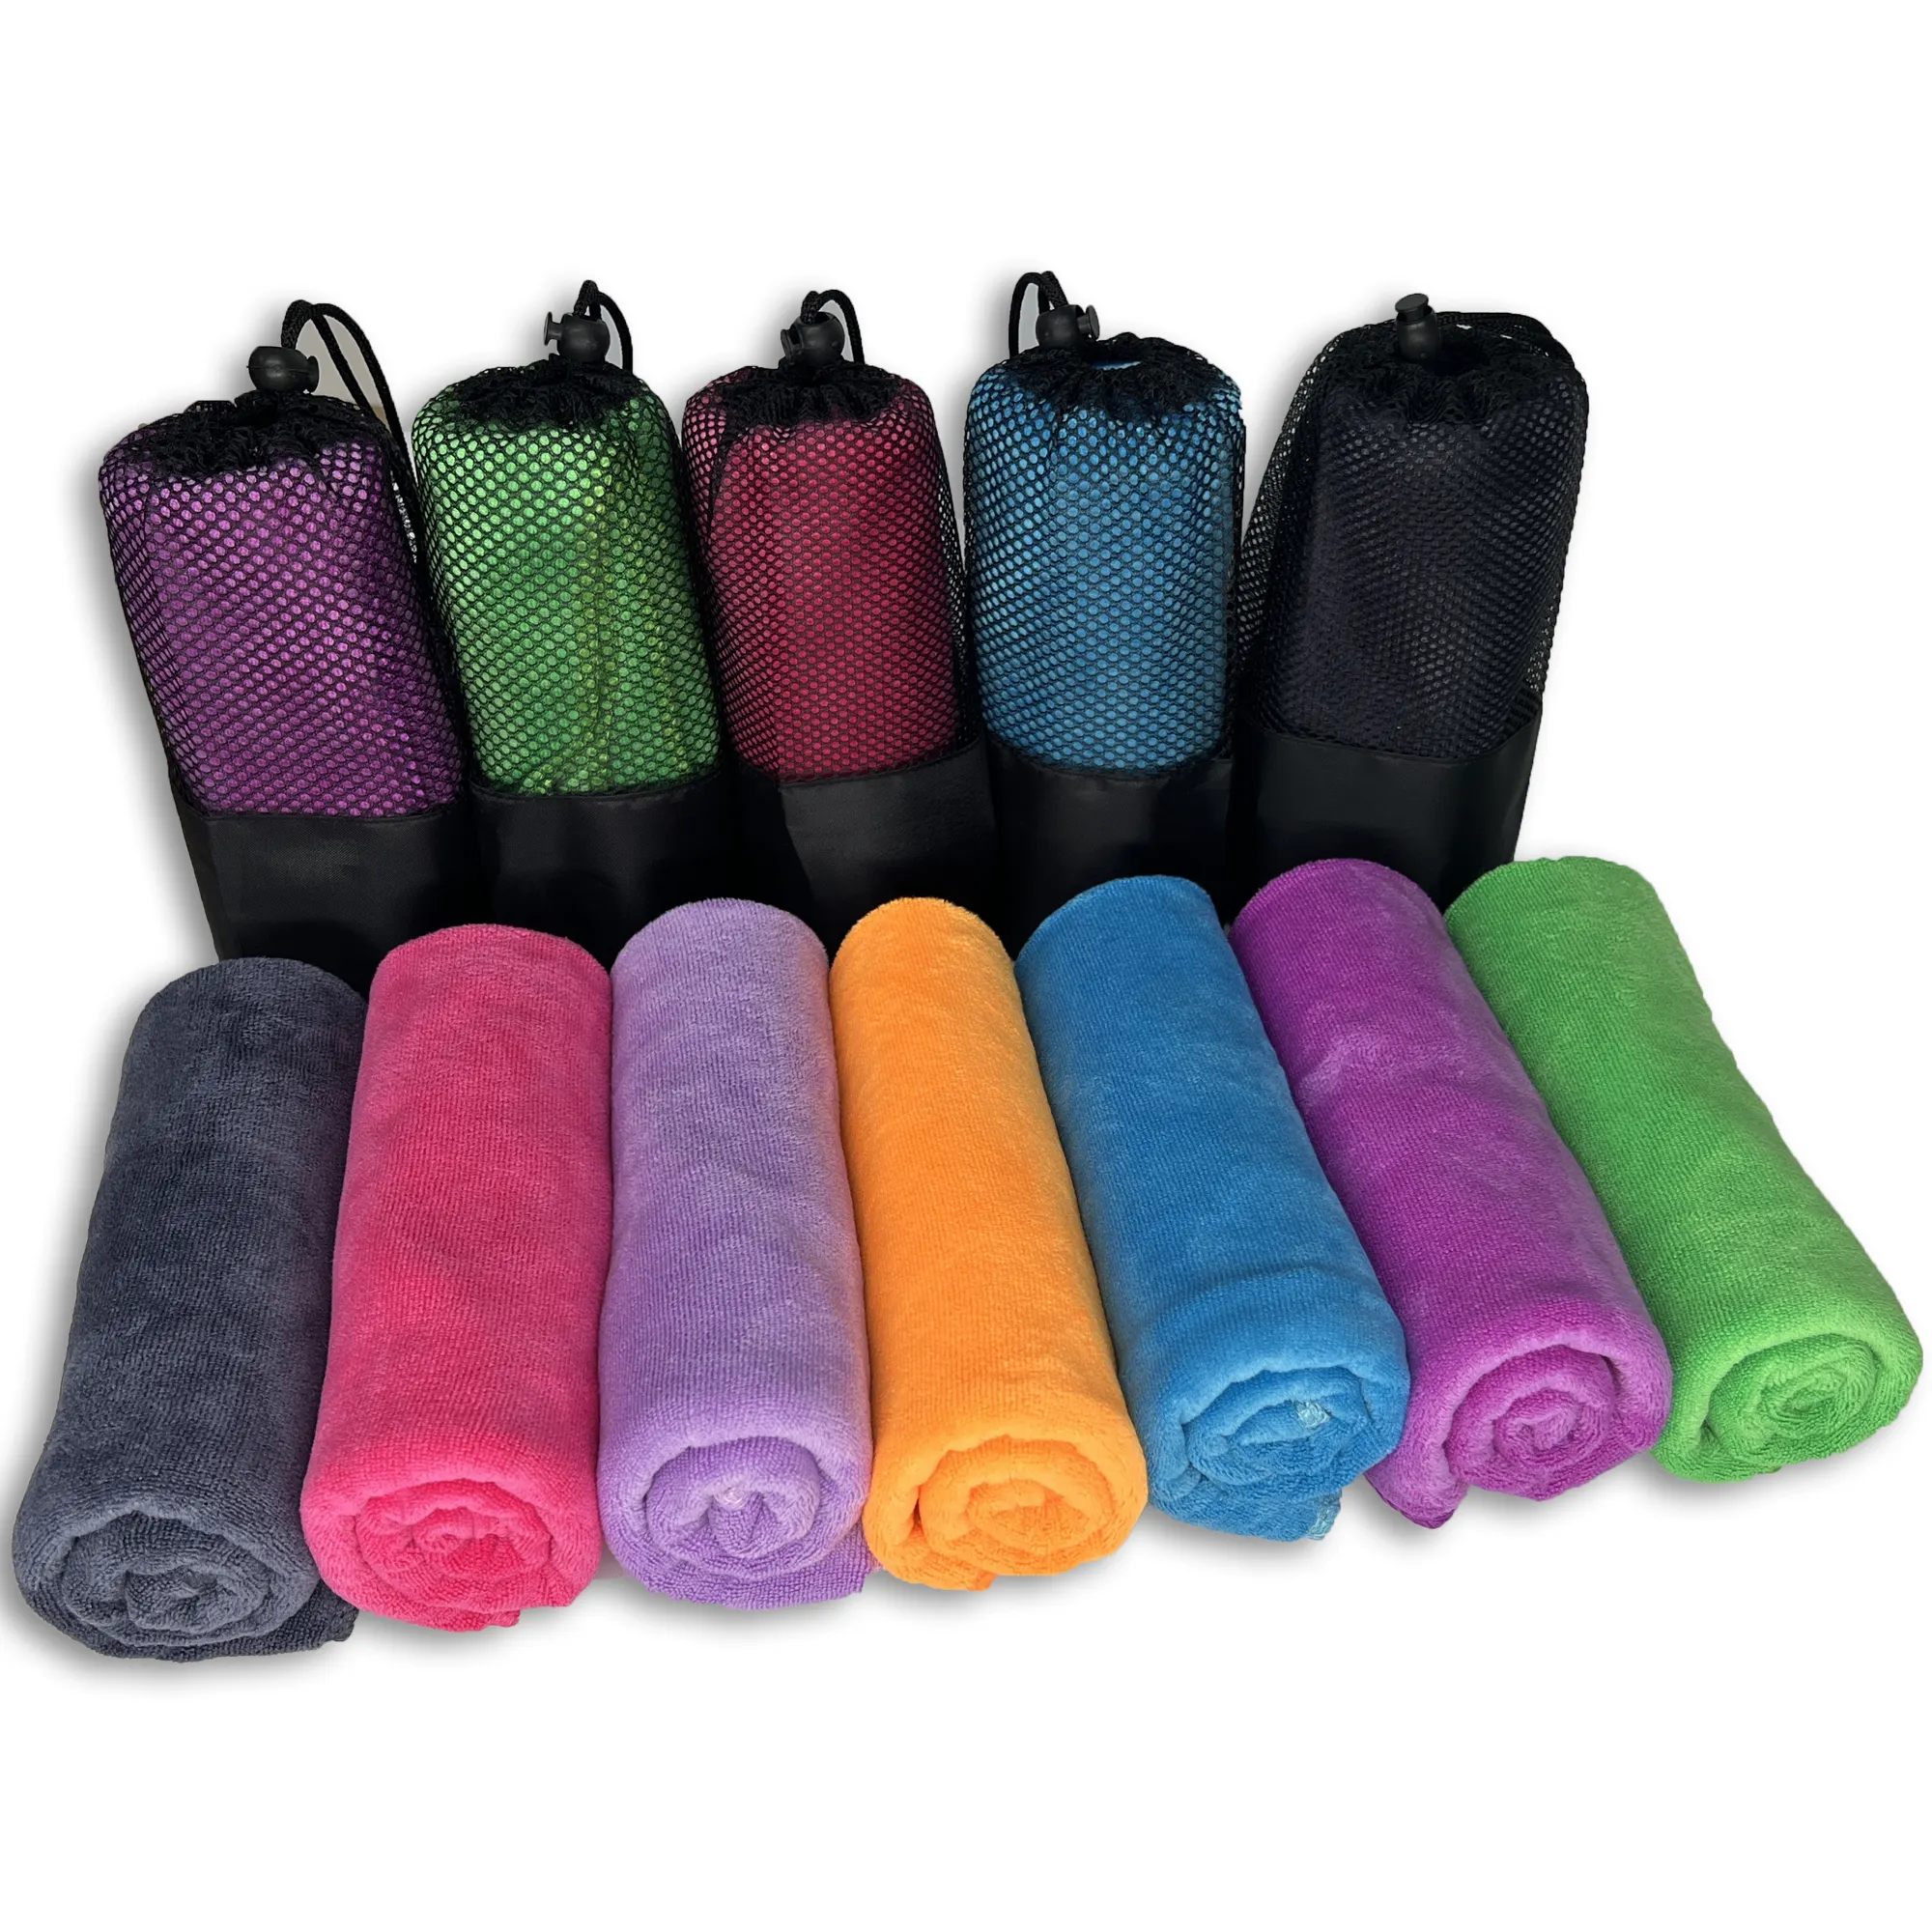 Toalhas polo sublimação rally toalhas microfibra esportes toalha